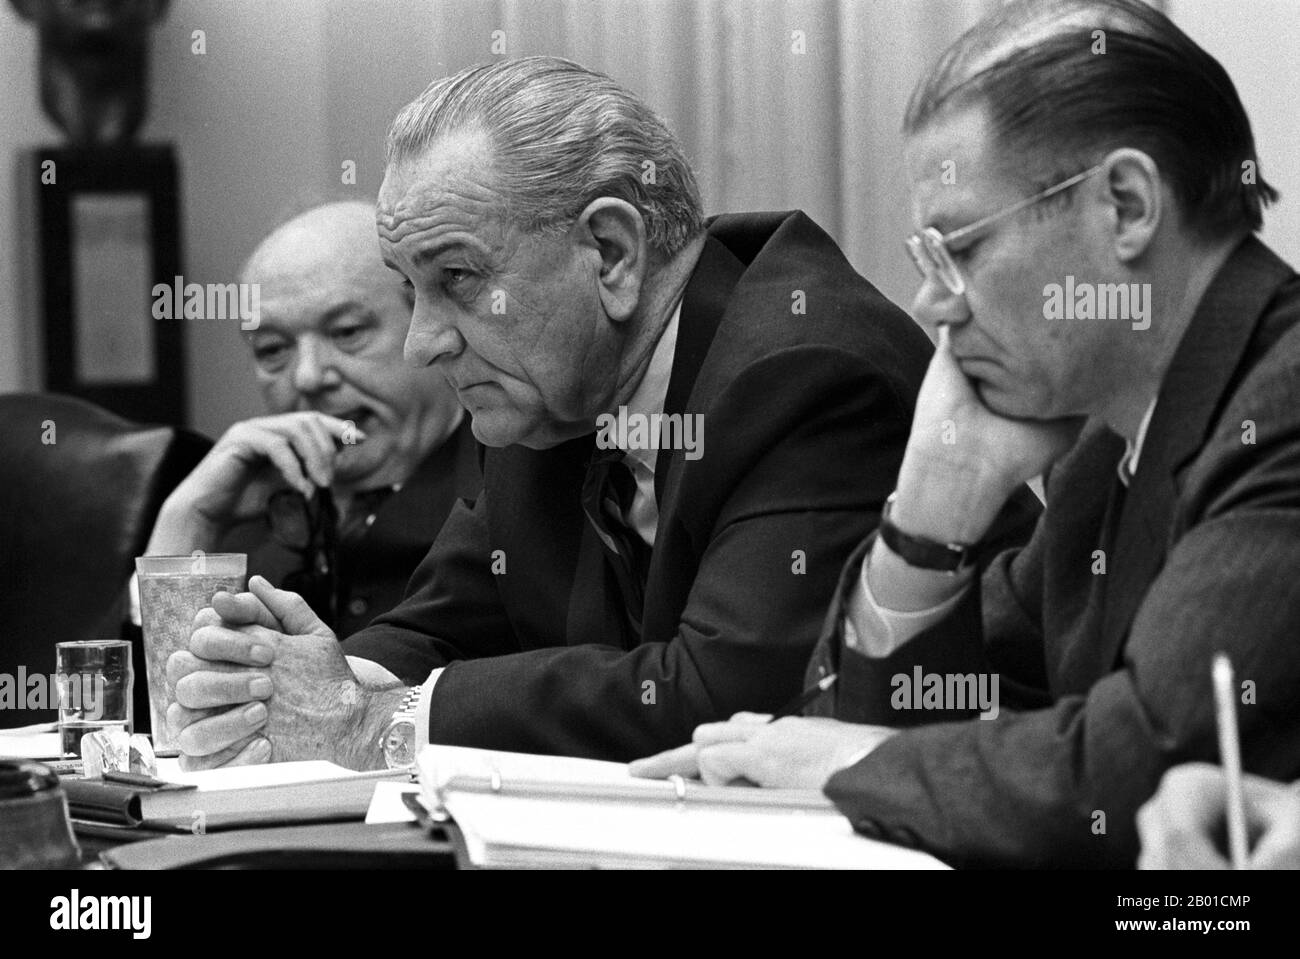 Stati Uniti/Vietnam: Dean Rusk, Lyndon B. Johnson e Robert McNamara in una riunione della Sala del Gabinetto della Casa Bianca. Foto di Yoichi Okamoto (1915-1985, pubblico dominio), 9 febbraio 1968. Da sinistra a destra, Dean Rusk, Segretario di Stato degli Stati Uniti (1961-1969), Lyndon Baines Johnson, Presidente degli Stati Uniti (1963-1969) e Robert McNamara, Segretario della Difesa degli Stati Uniti (1961-1968) conferiscono nel Gabinetto della Casa Bianca Rooom, al culmine dell'offensiva del Tet in Vietnam (30 gennaio - 28 marzo 1968). Foto Stock